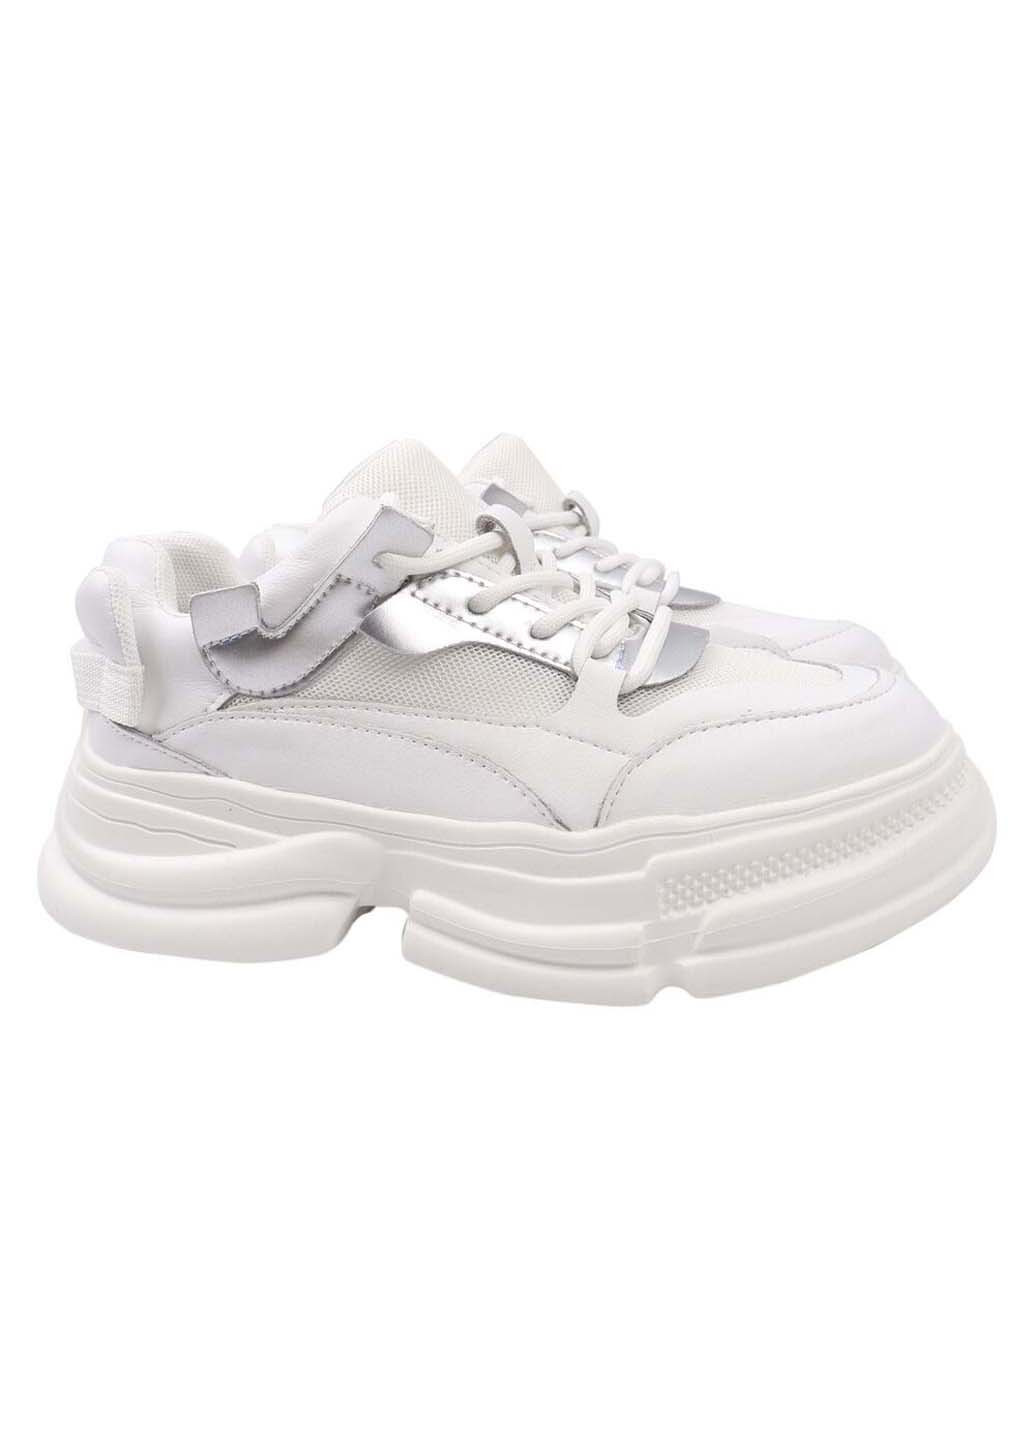 Білі осінні кросівки Lifexpert 579-21DK